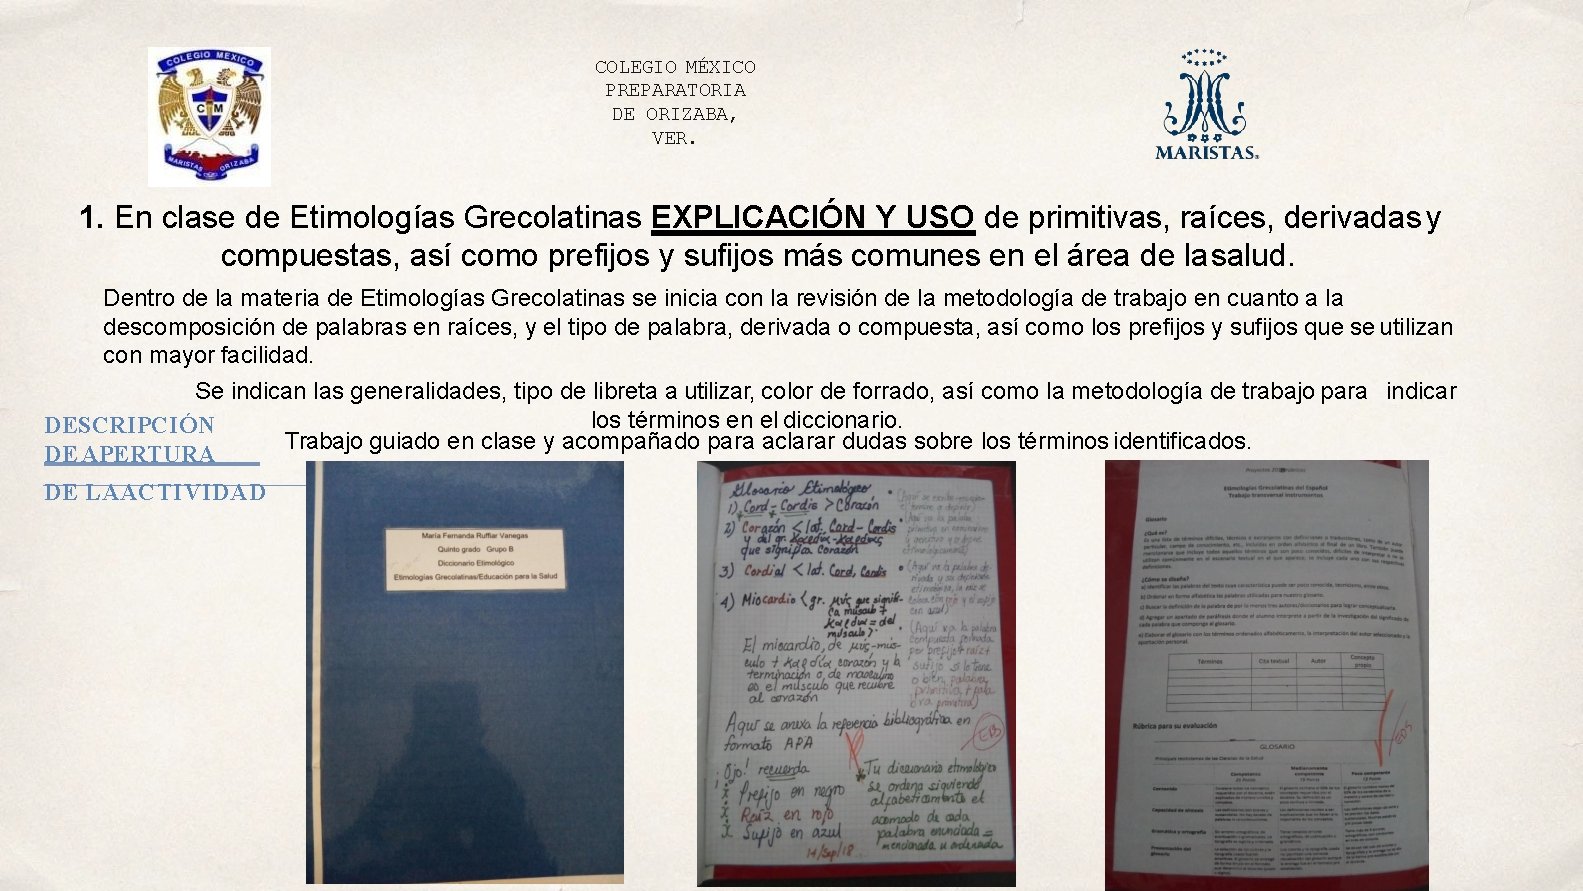 COLEGIO MÉXICO PREPARATORIA DE ORIZABA, VER. 1. En clase de Etimologías Grecolatinas EXPLICACIÓN Y